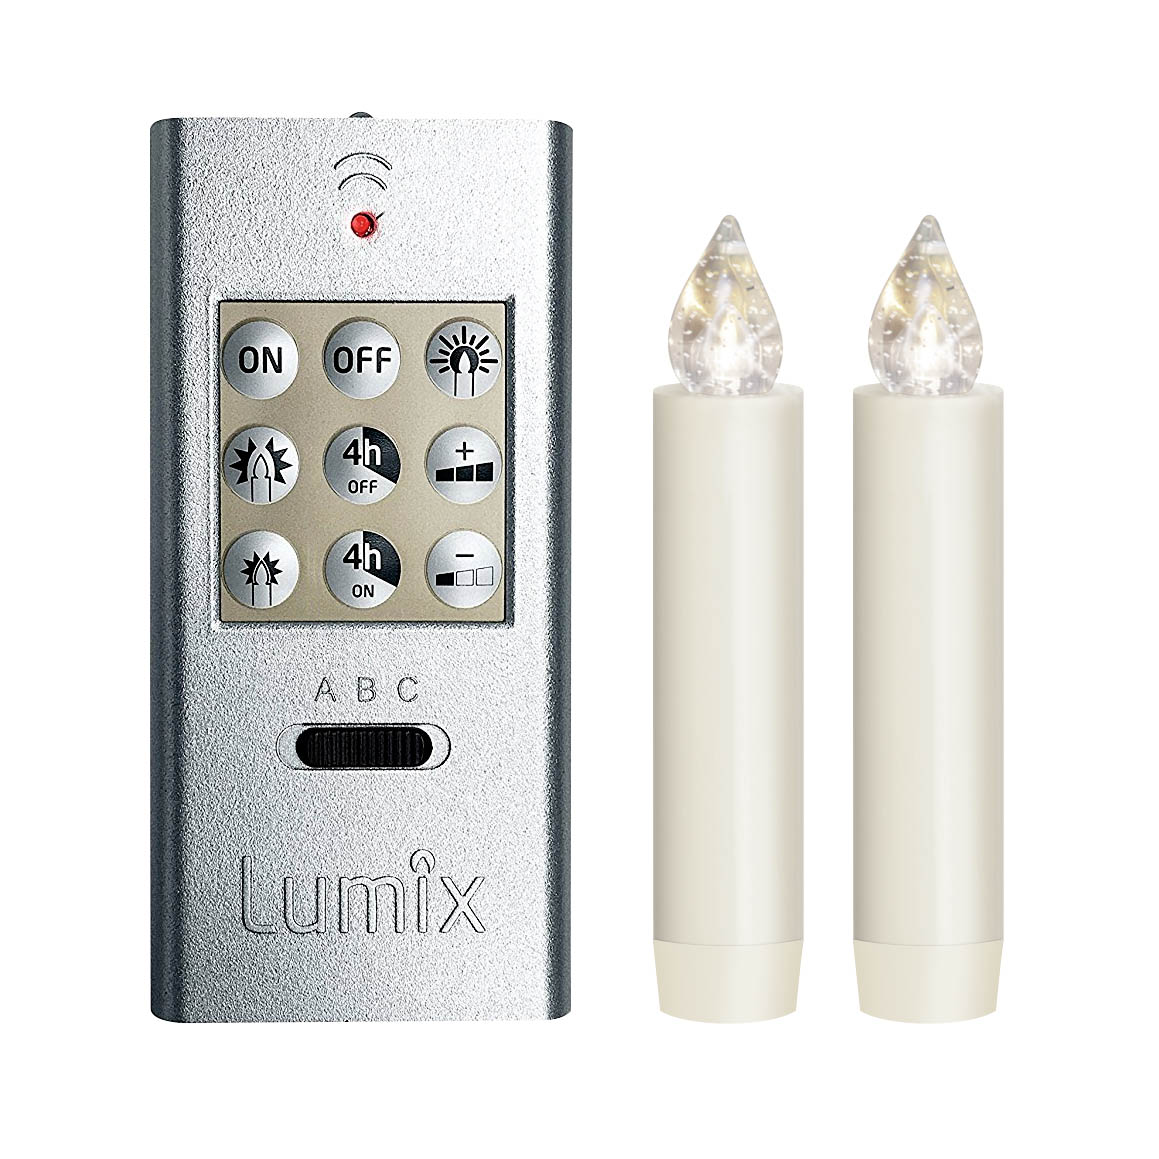 LUMIX CLASSIC MINI S,-Superlight- Basis 2 Kerzen, 1 Fernbedienung inkl.Batterien -NEU-